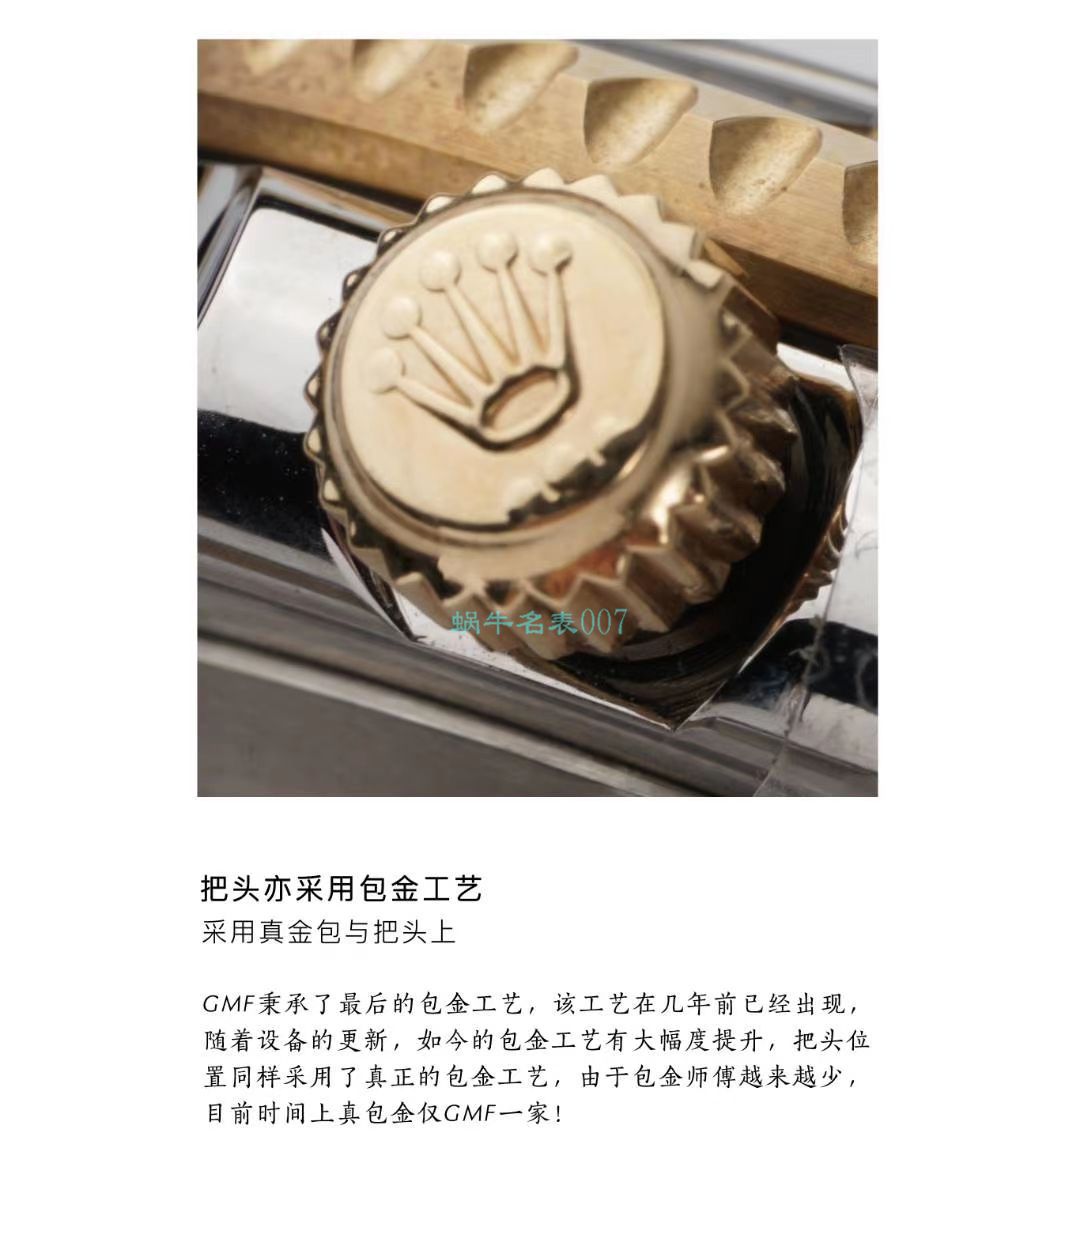 GMF包金单黄劳力士海使型系列m126603-0001腕表 / R678